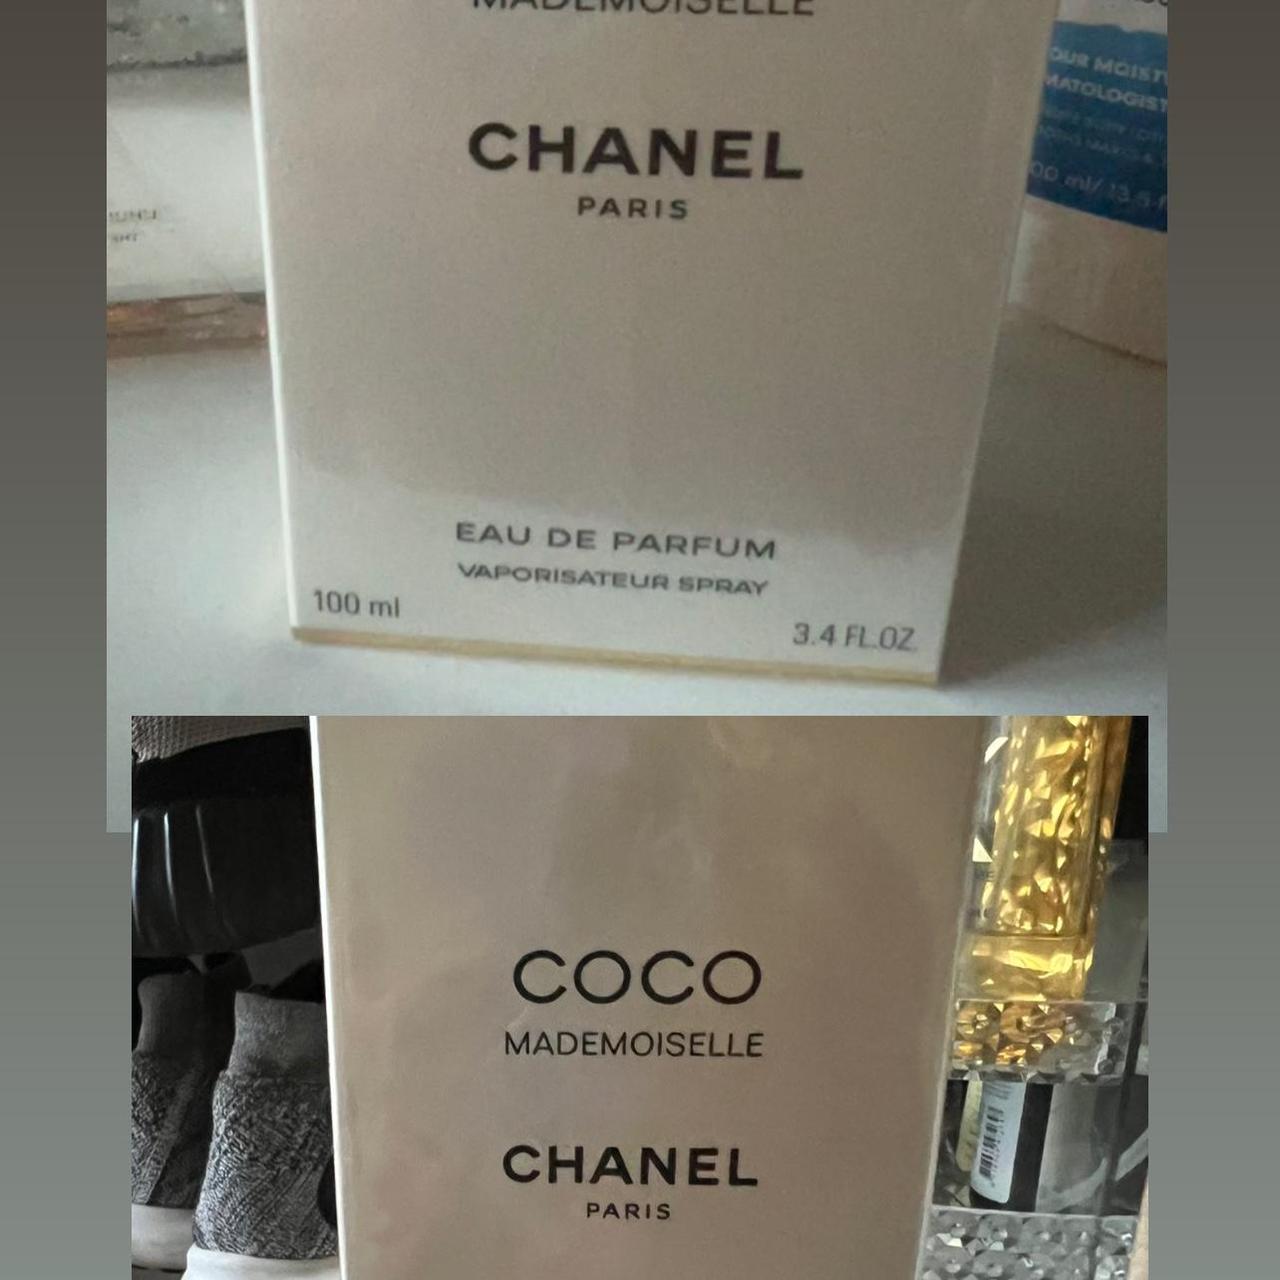 CHANEL NO. 5 by Chanel 15 ml/ 0.5 oz PARFUM Splash NIB VINTAGE